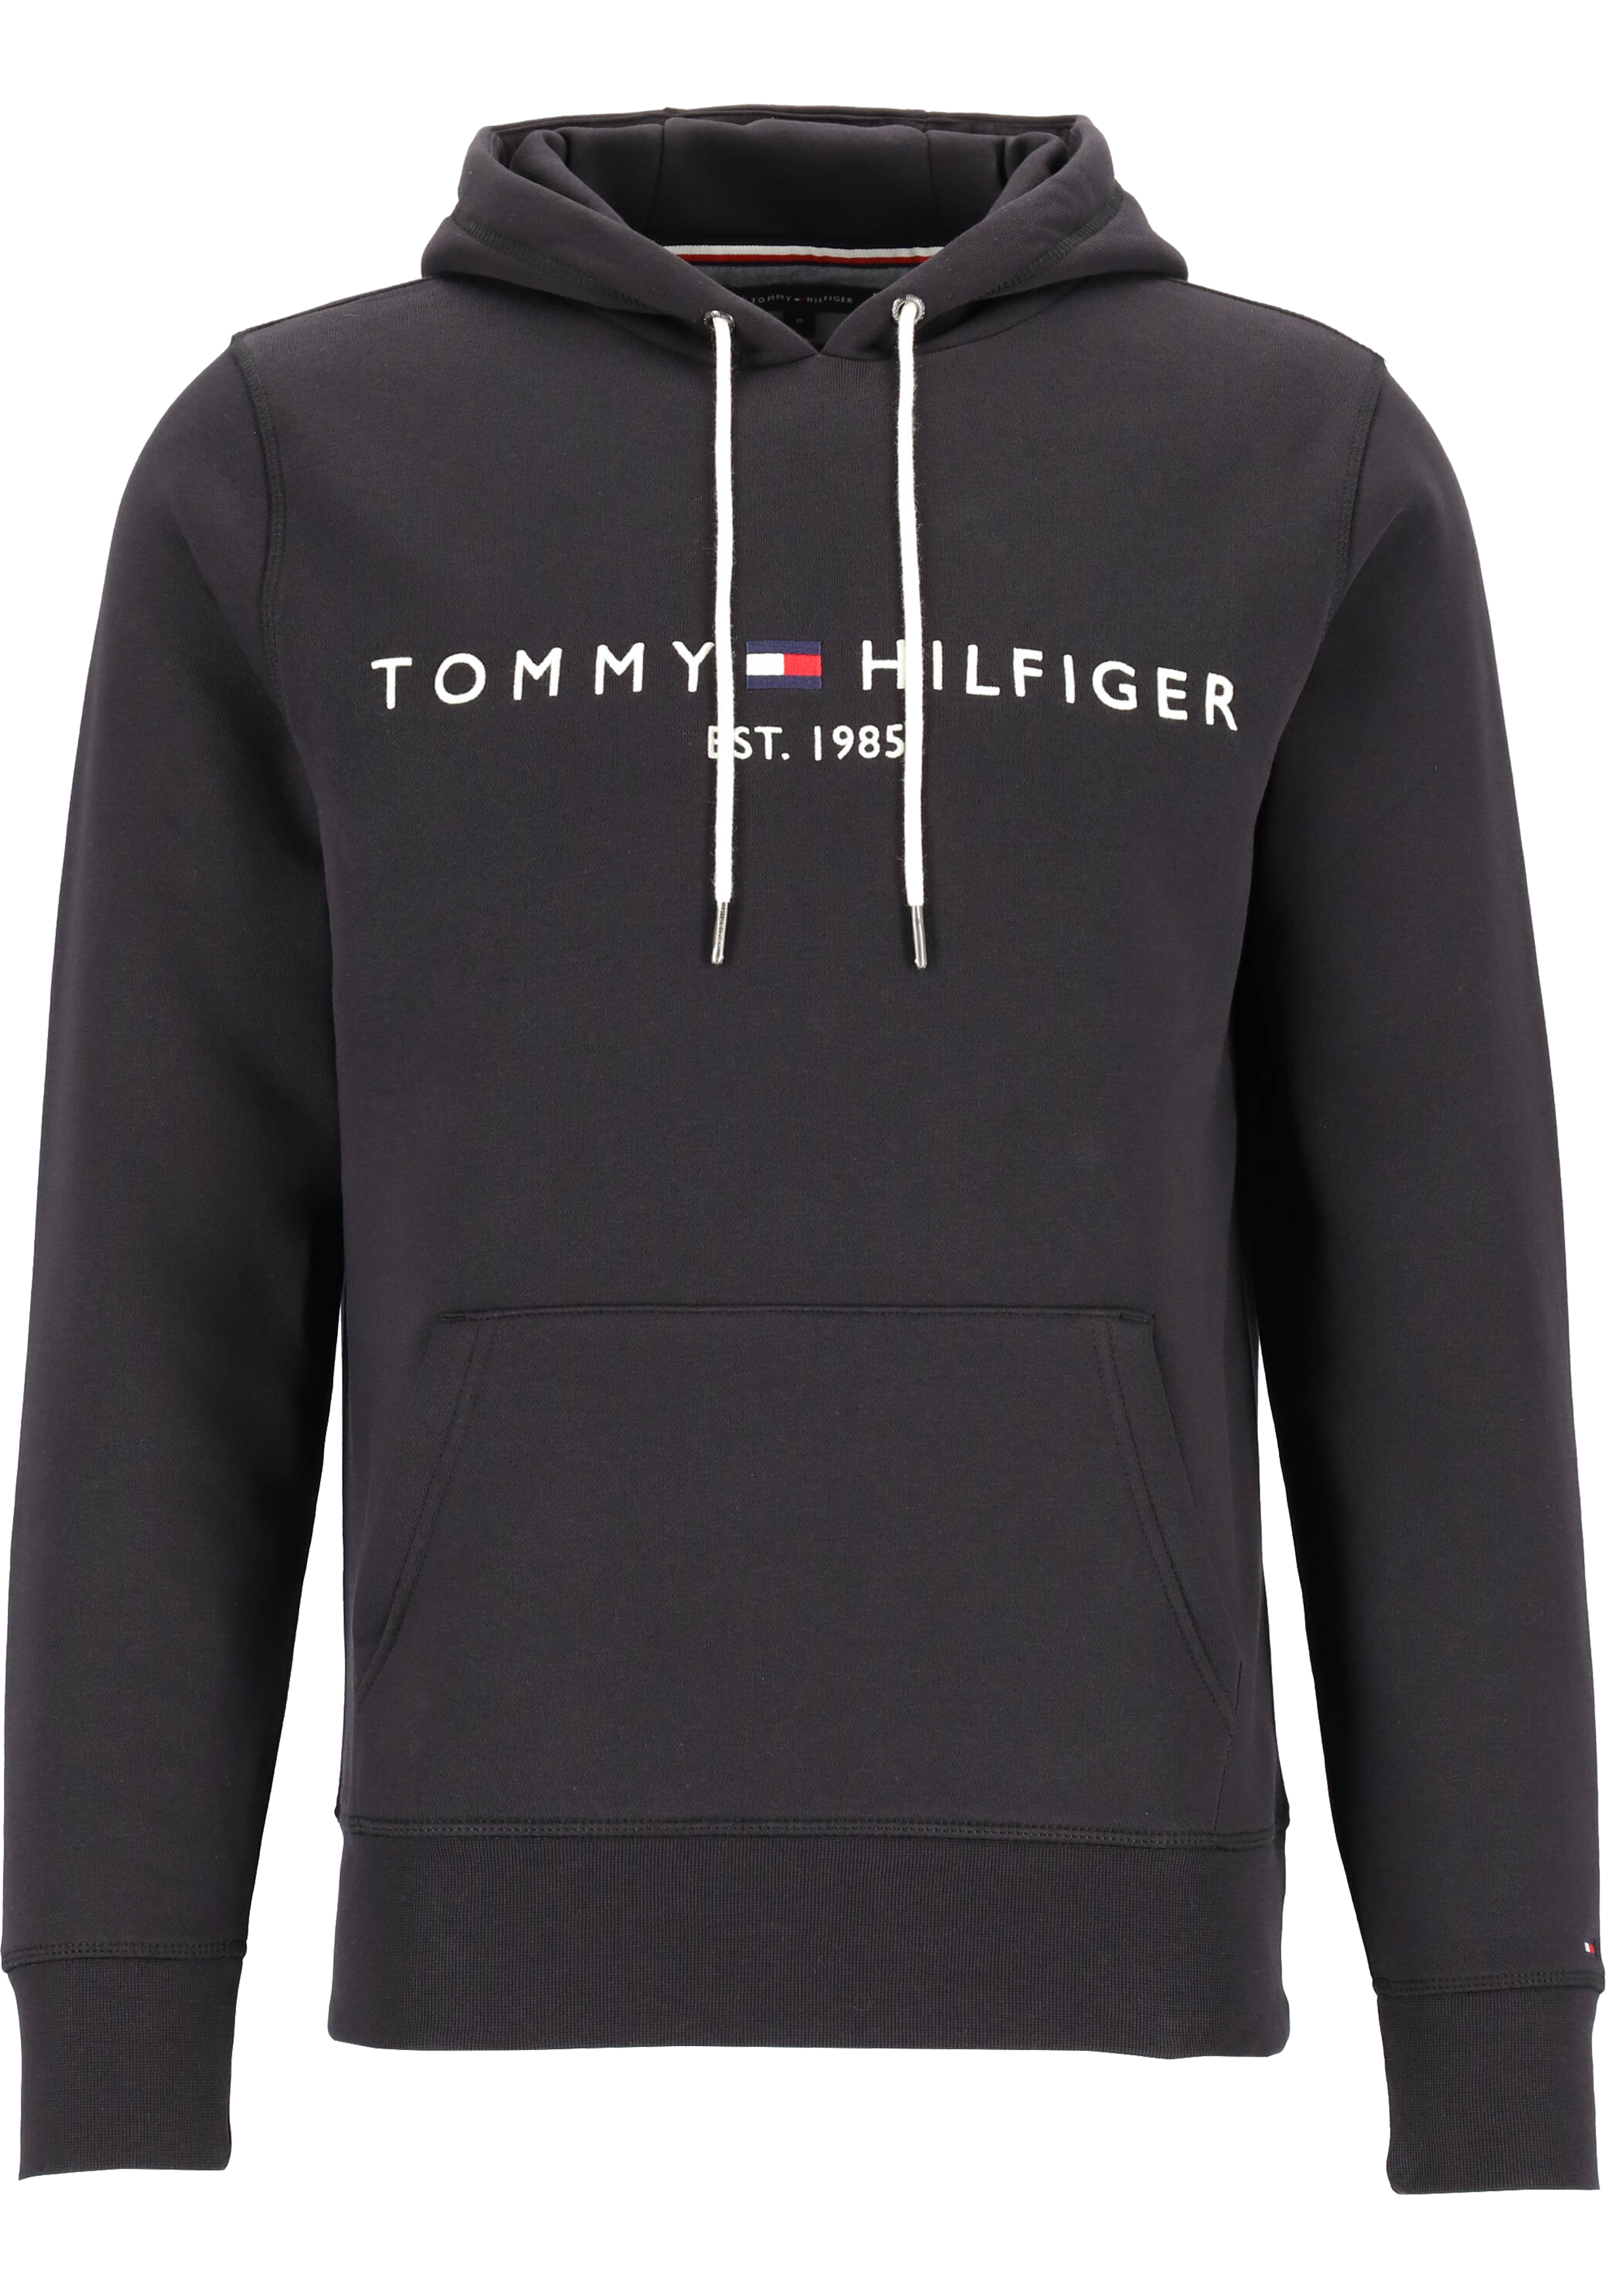 doorgaan met meester tactiek Tommy Hilfiger Core Tommy logo hoody, regular fit heren sweathoodie, zwart  - Zomer SALE tot 50% korting